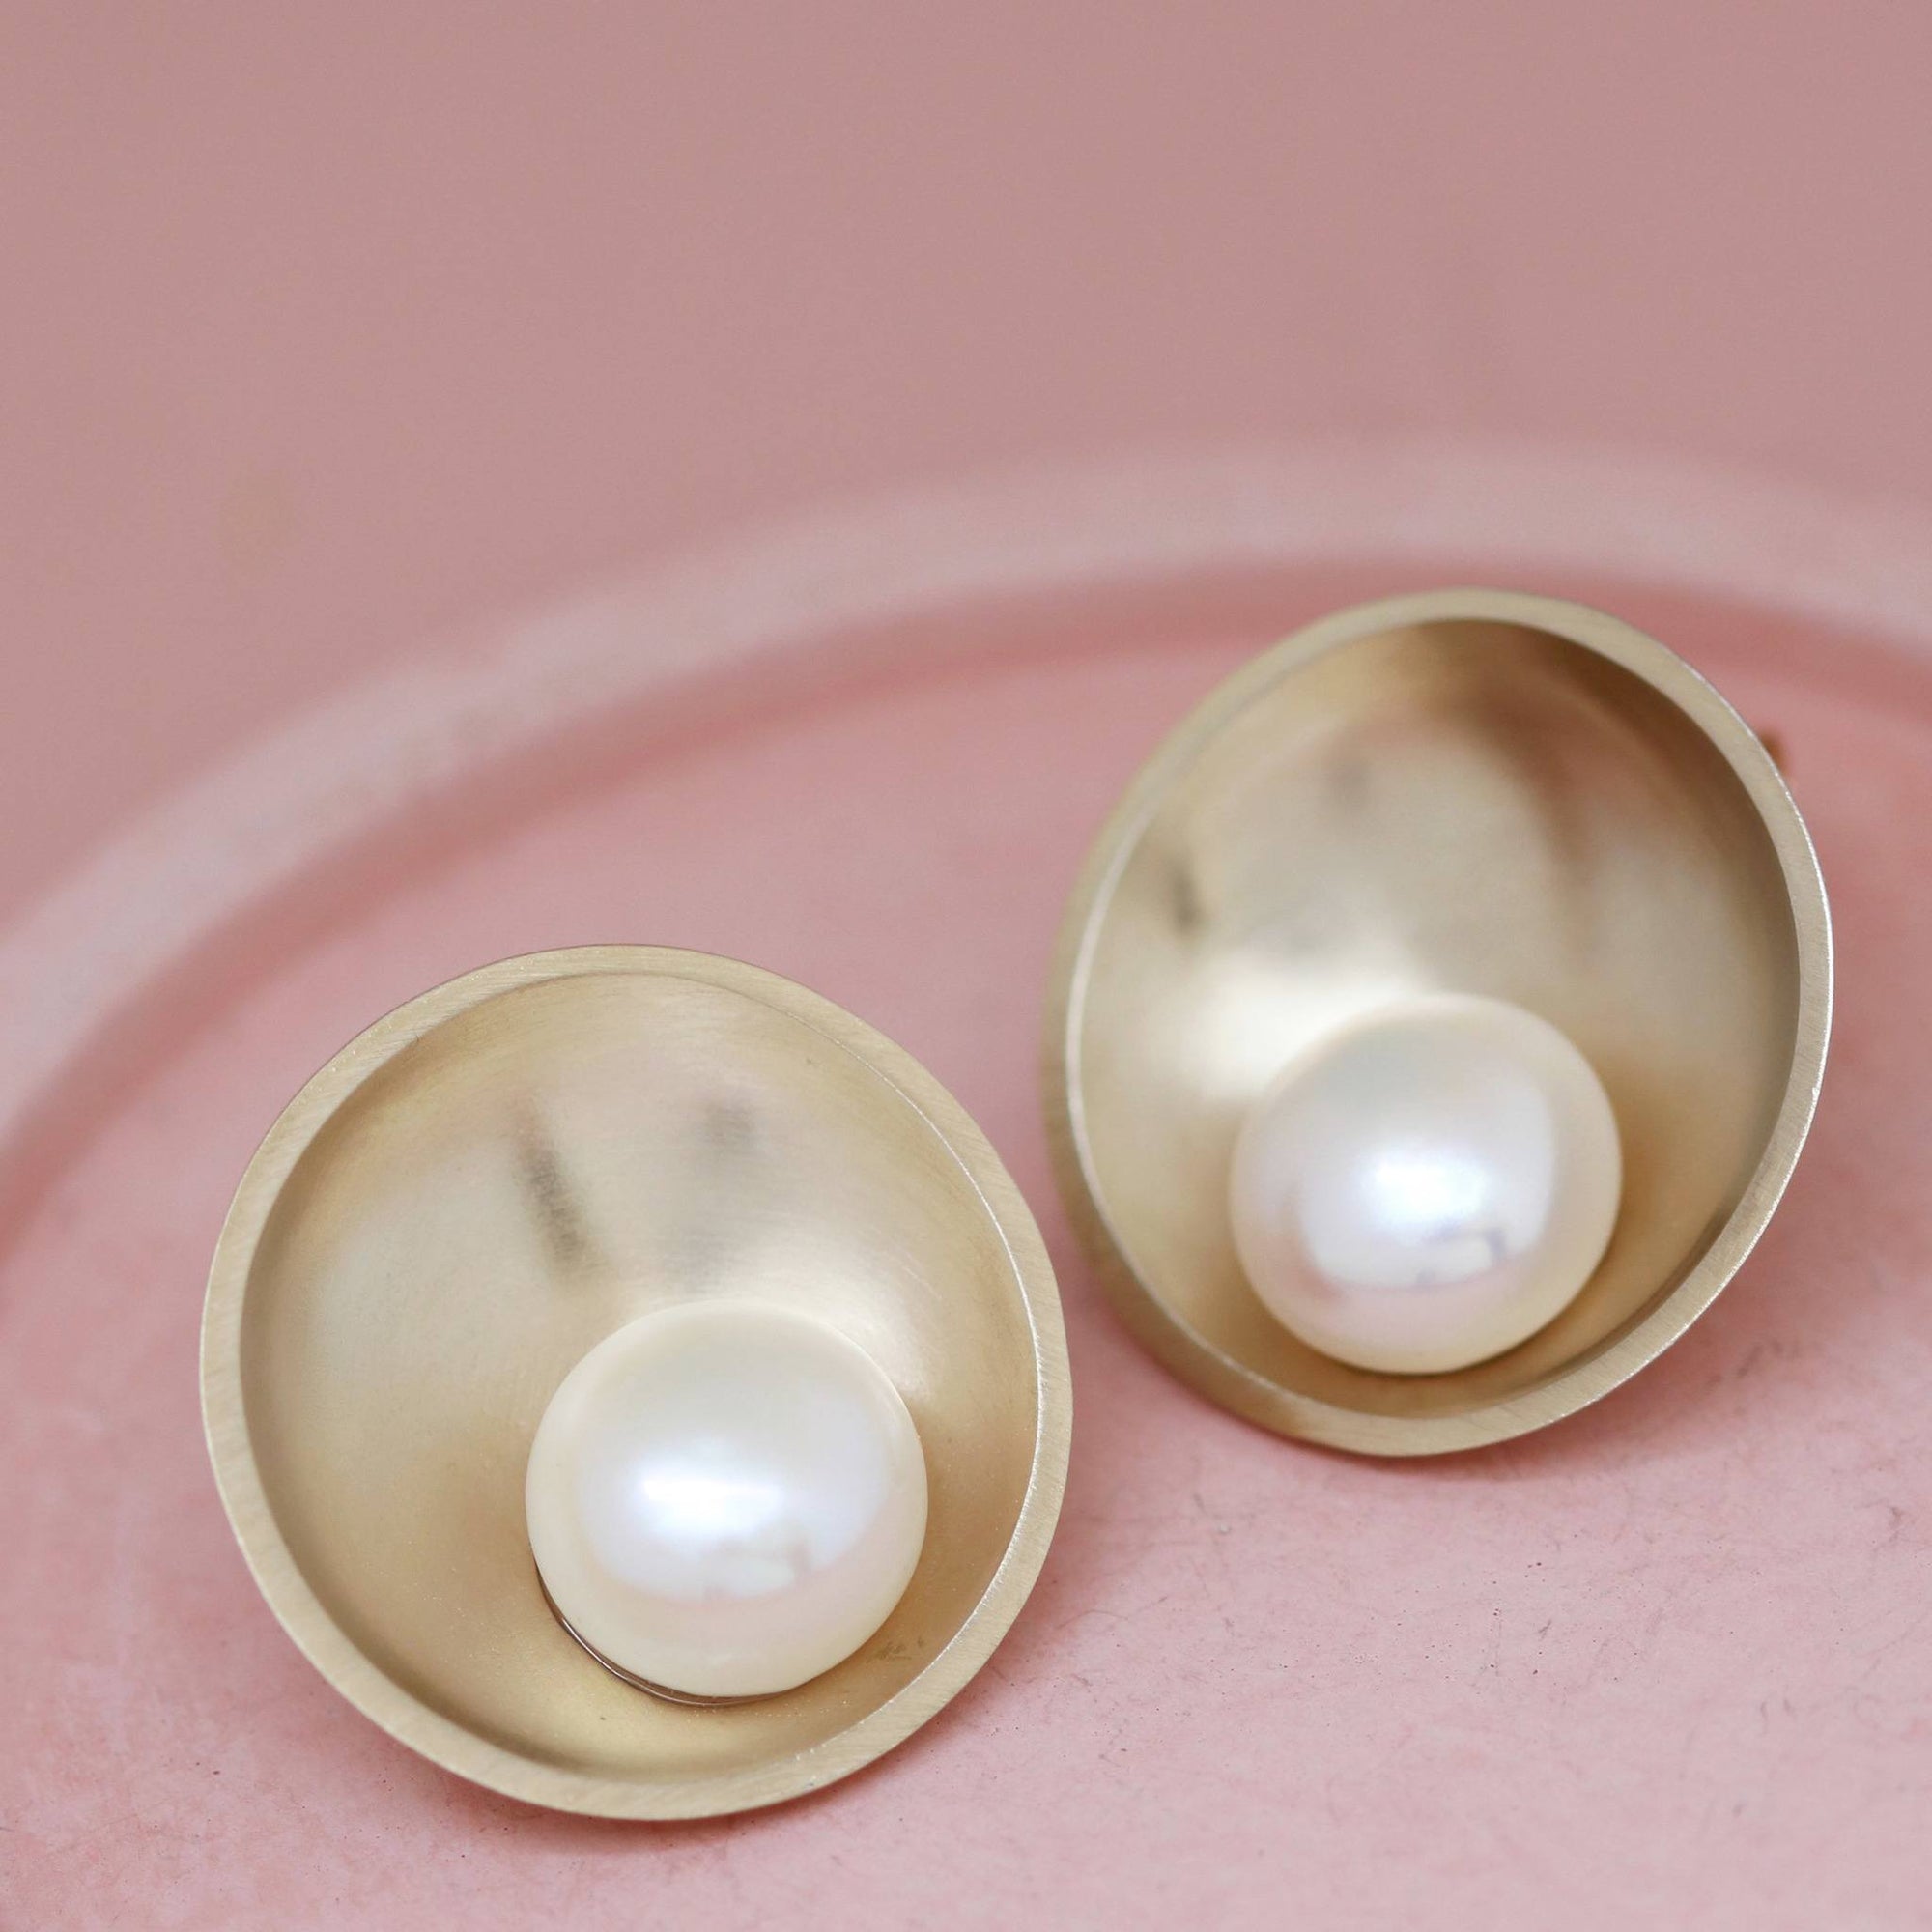 statement pearl earrings